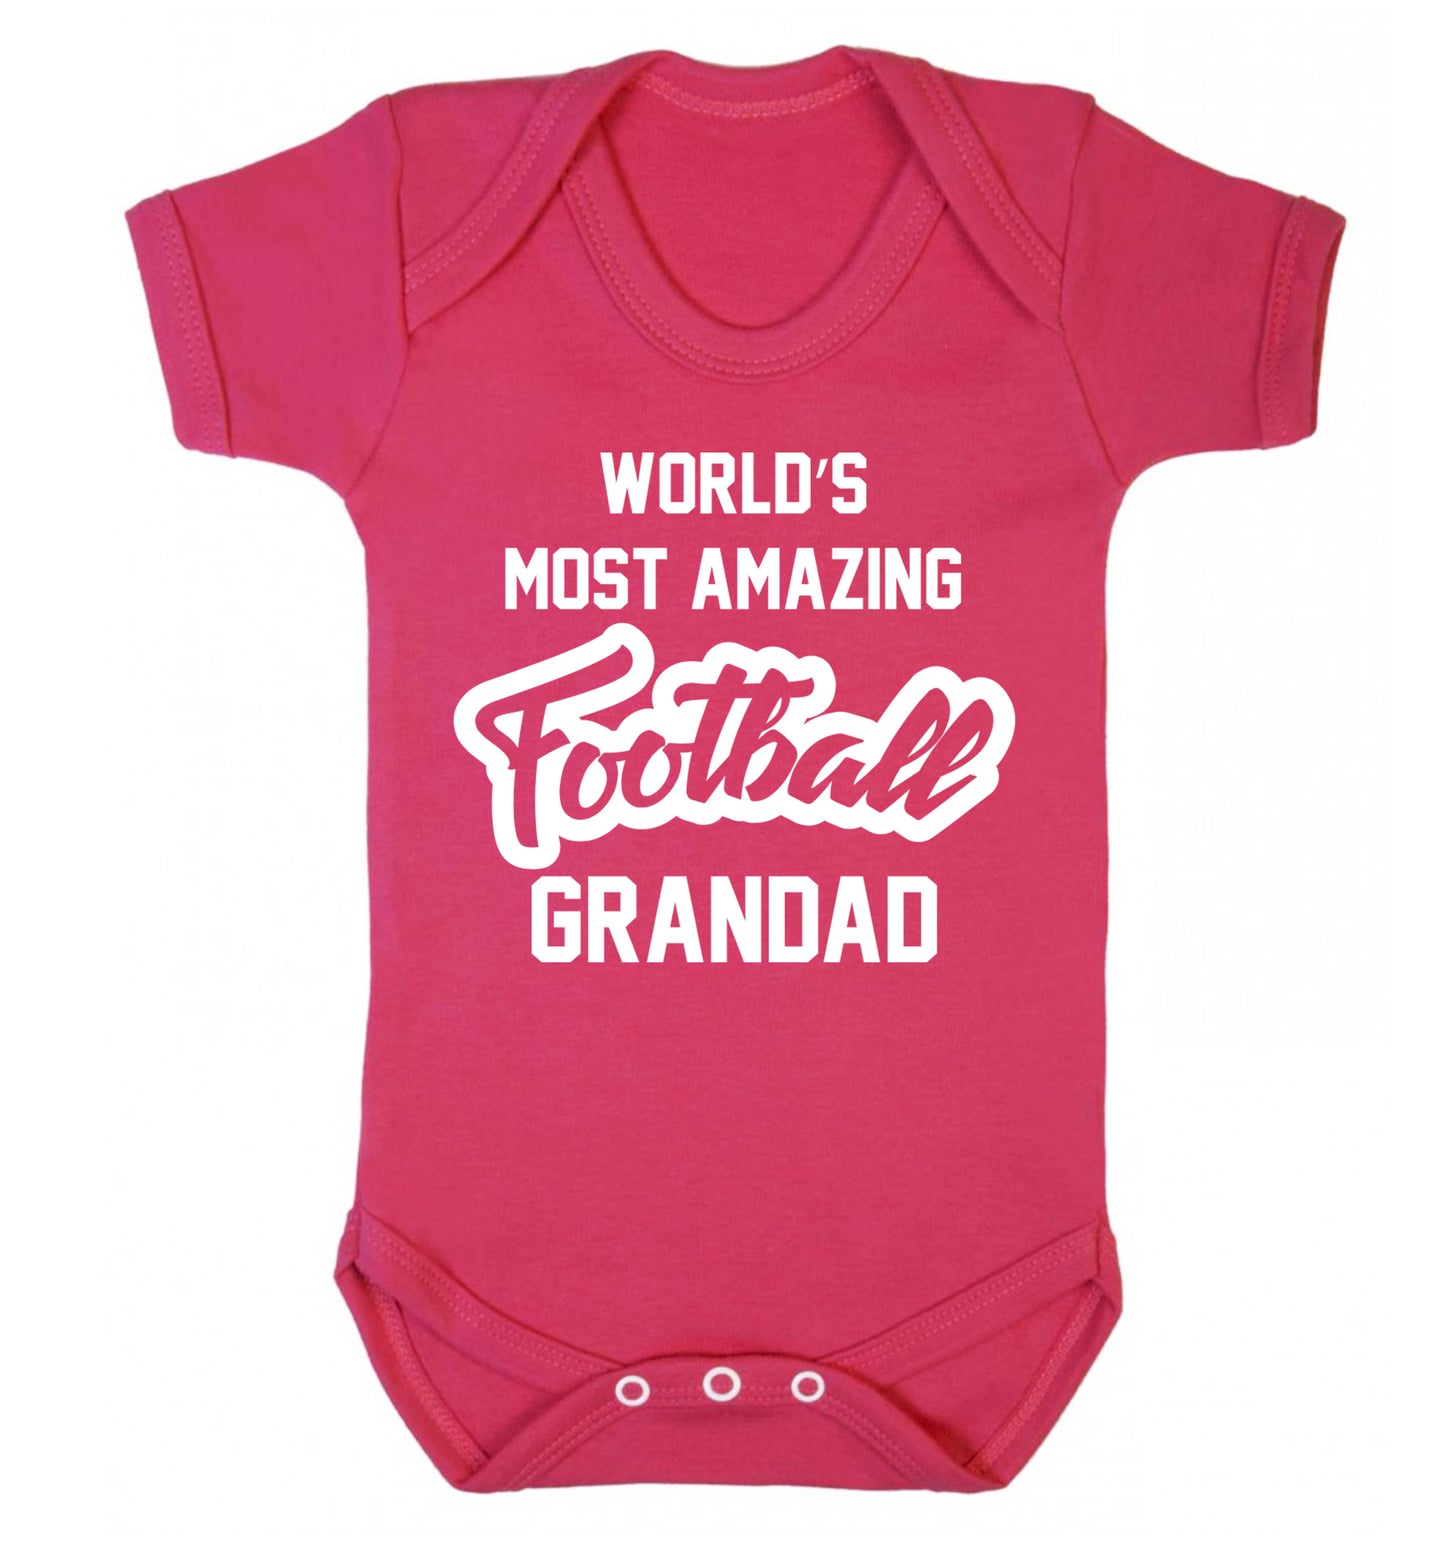 Worlds most amazing football grandad Baby Vest dark pink 18-24 months